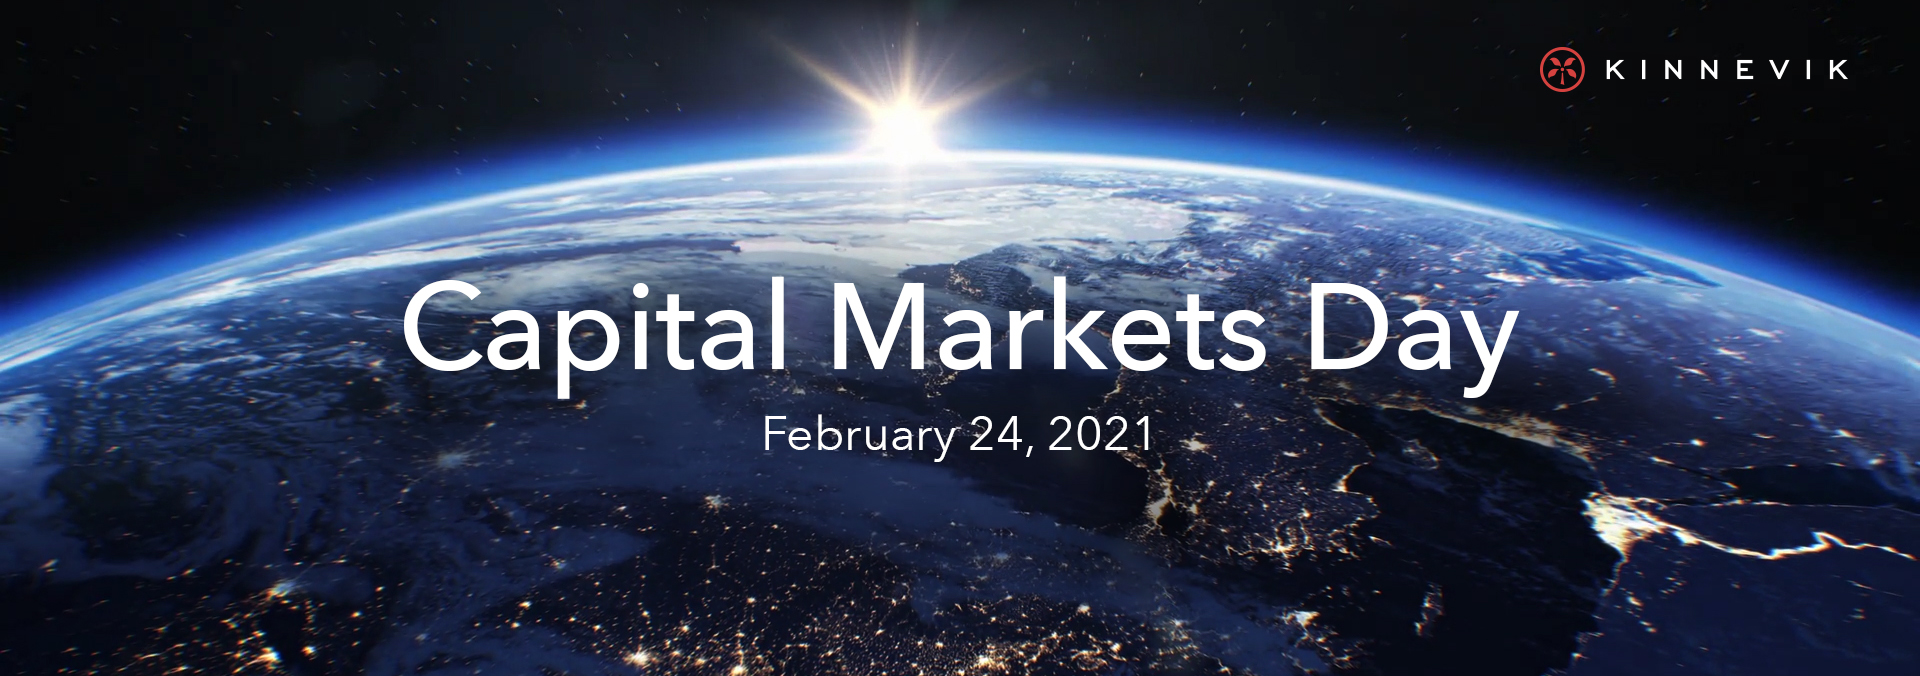 Header image for Kinnevik's Capital Markets Day